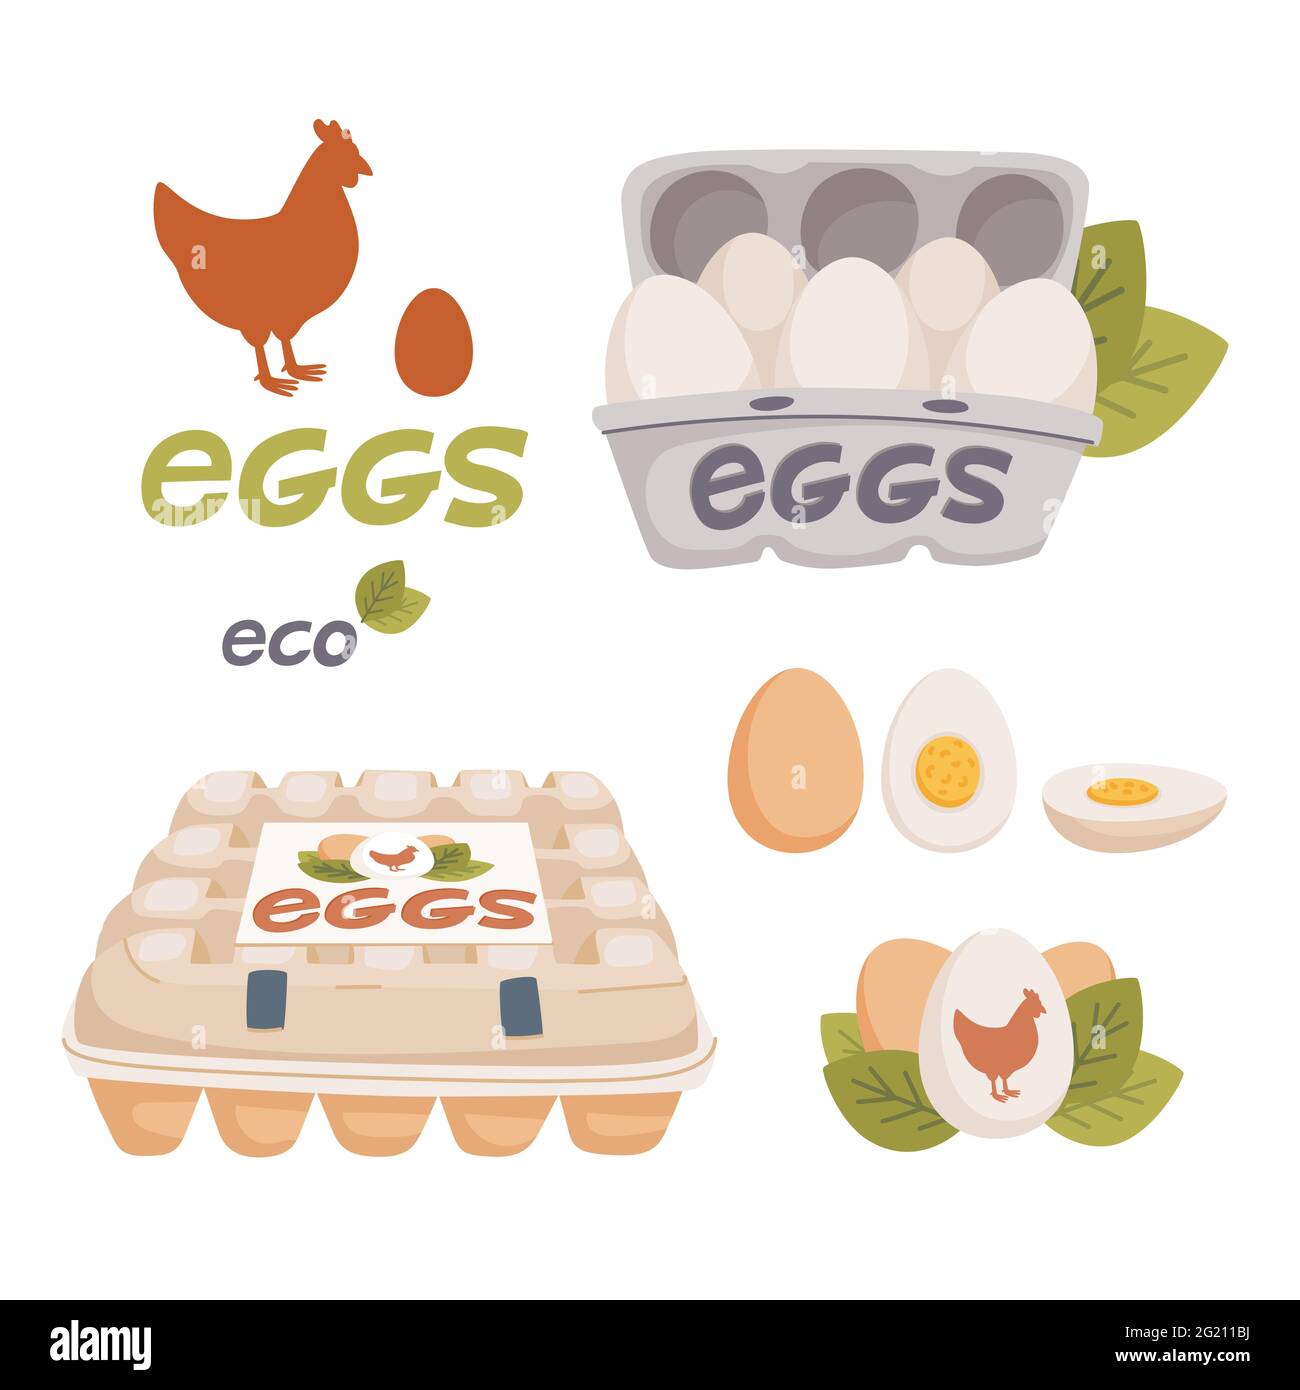 Set di uova di pollo, uova in scatole di cartone e logo di uova fresche da fattoria. Prodotto biologico agricolo, eco. Ingrediente di cottura. Illustrazione vettoriale di stile piatto Illustrazione Vettoriale